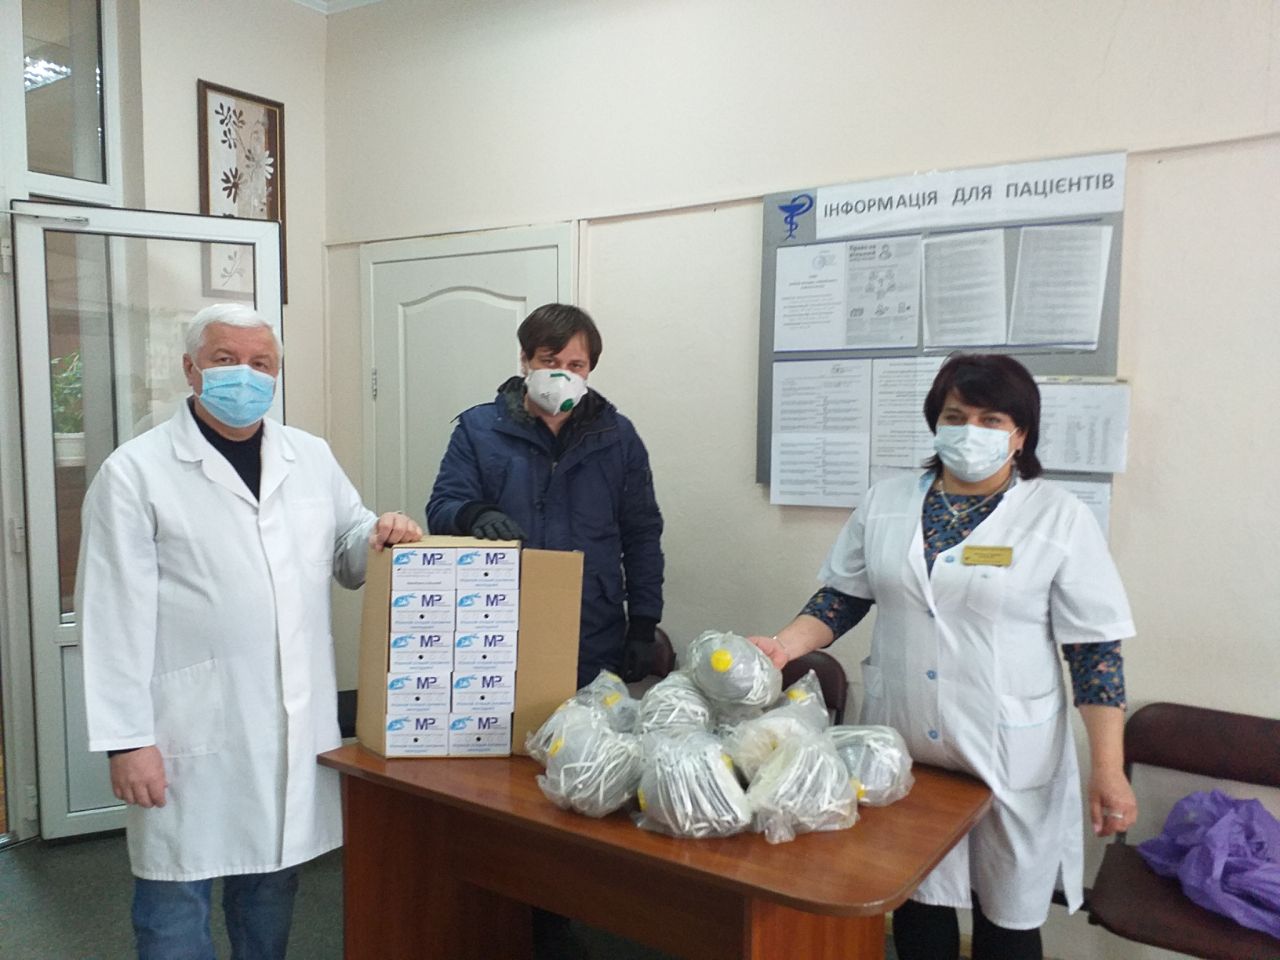 Запорожские волонтеры продолжают оказывать помощь медикам, которые борются с COVID-19 без средств защиты